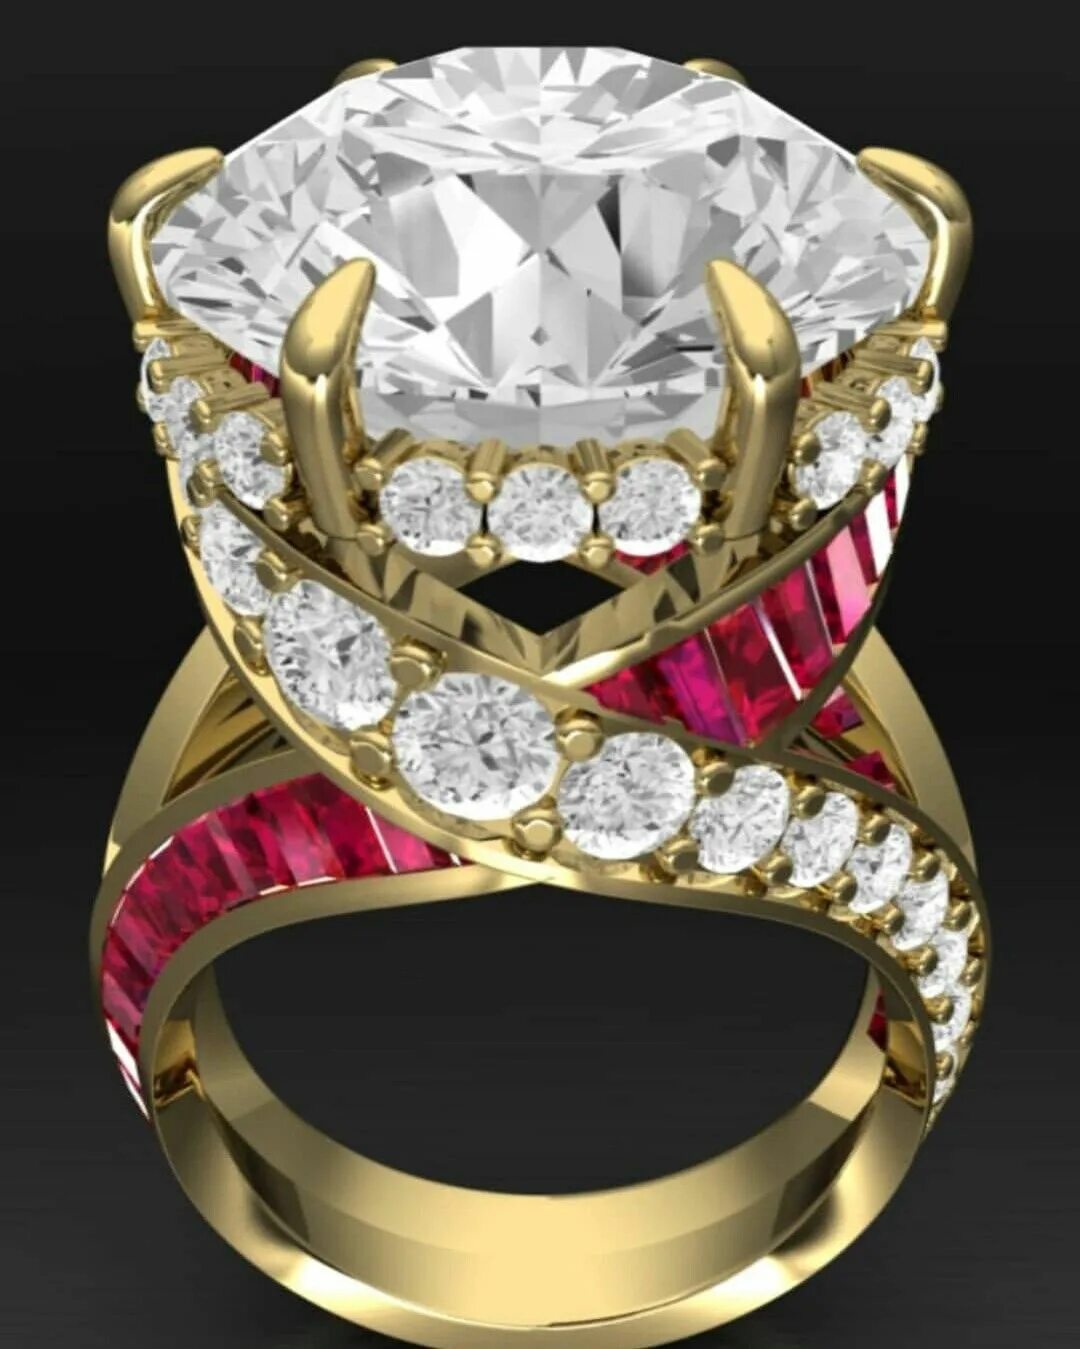 Золотое кольцо Рубин бриллианты эксклюзив. Кольцо Faberge 18 карат. Кольцо Голд Даймонд. Дорогие украшения с бриллиантами.